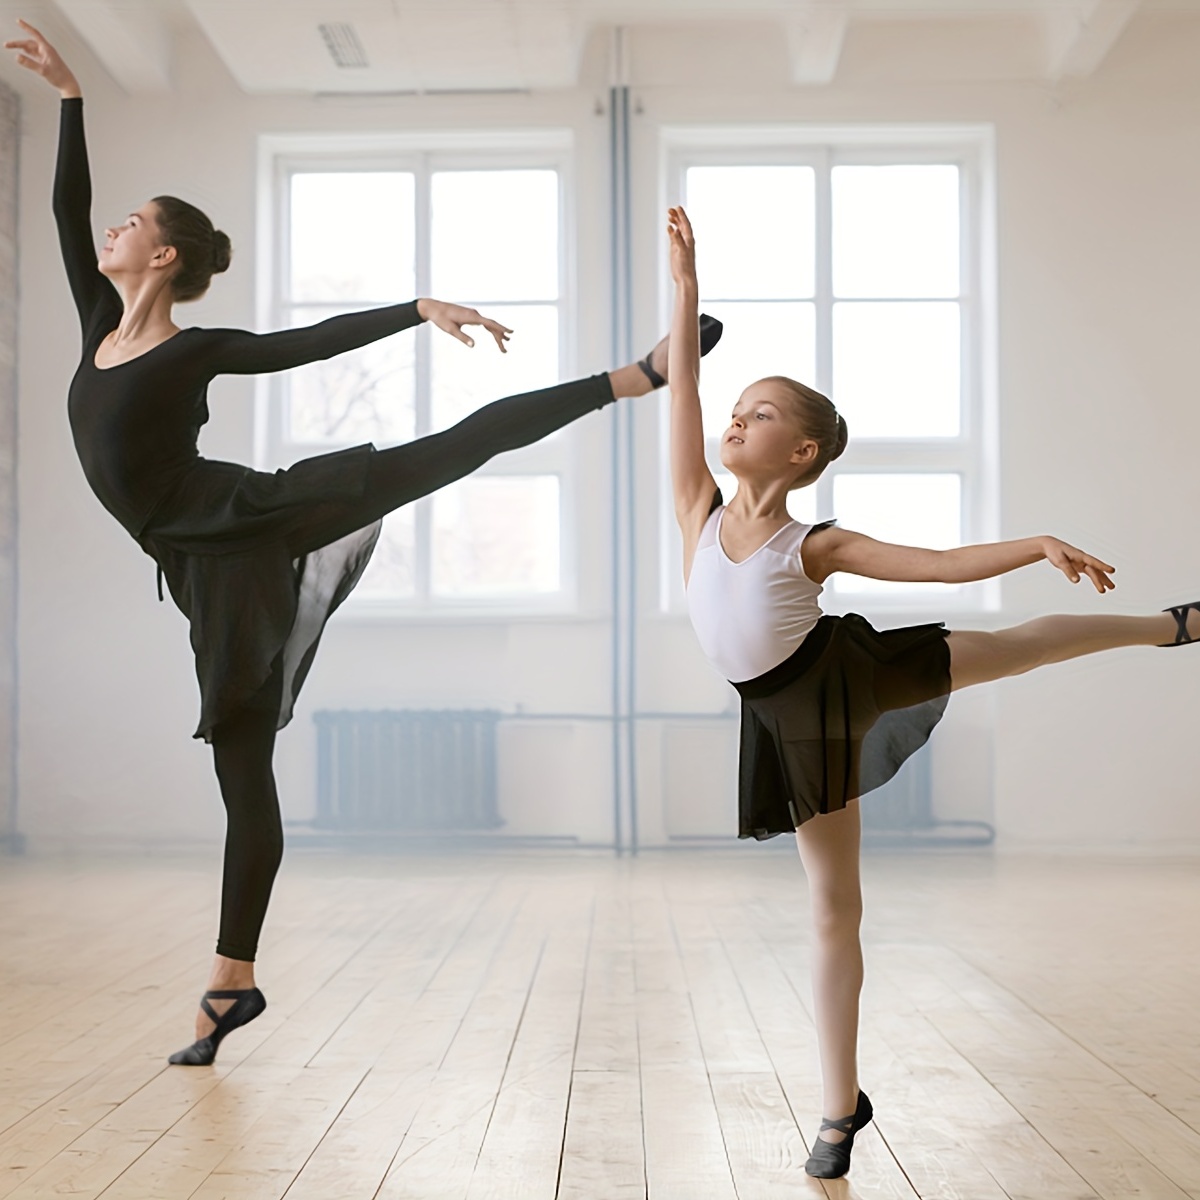 Ballet infantil Zapatos: Para niñas, niños y niños pequeños